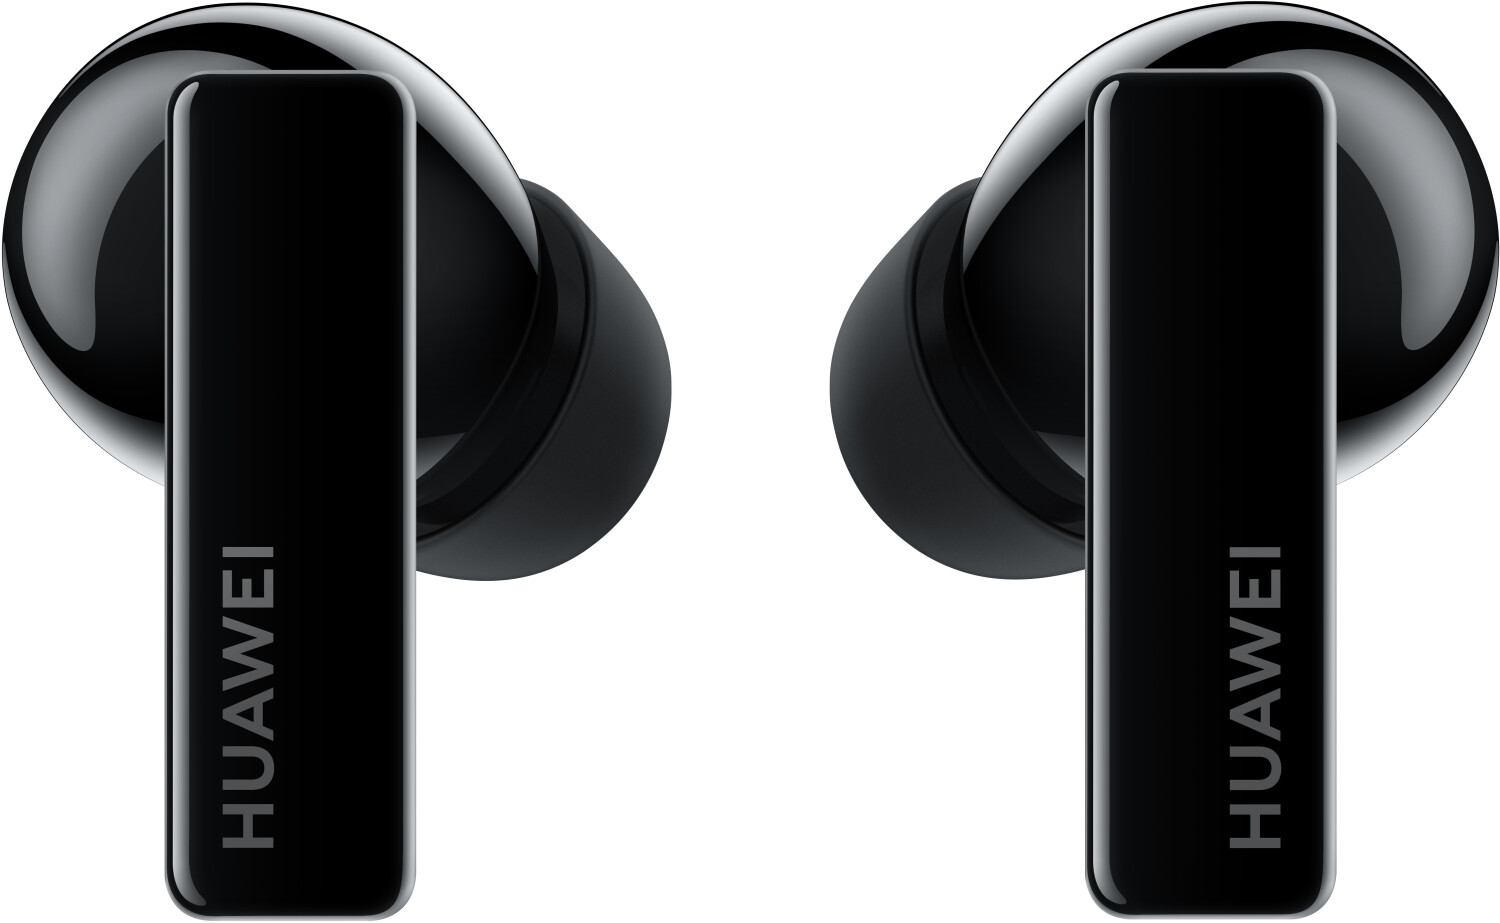 La respuesta de Huawei a los AirPods Pro son estos auriculares